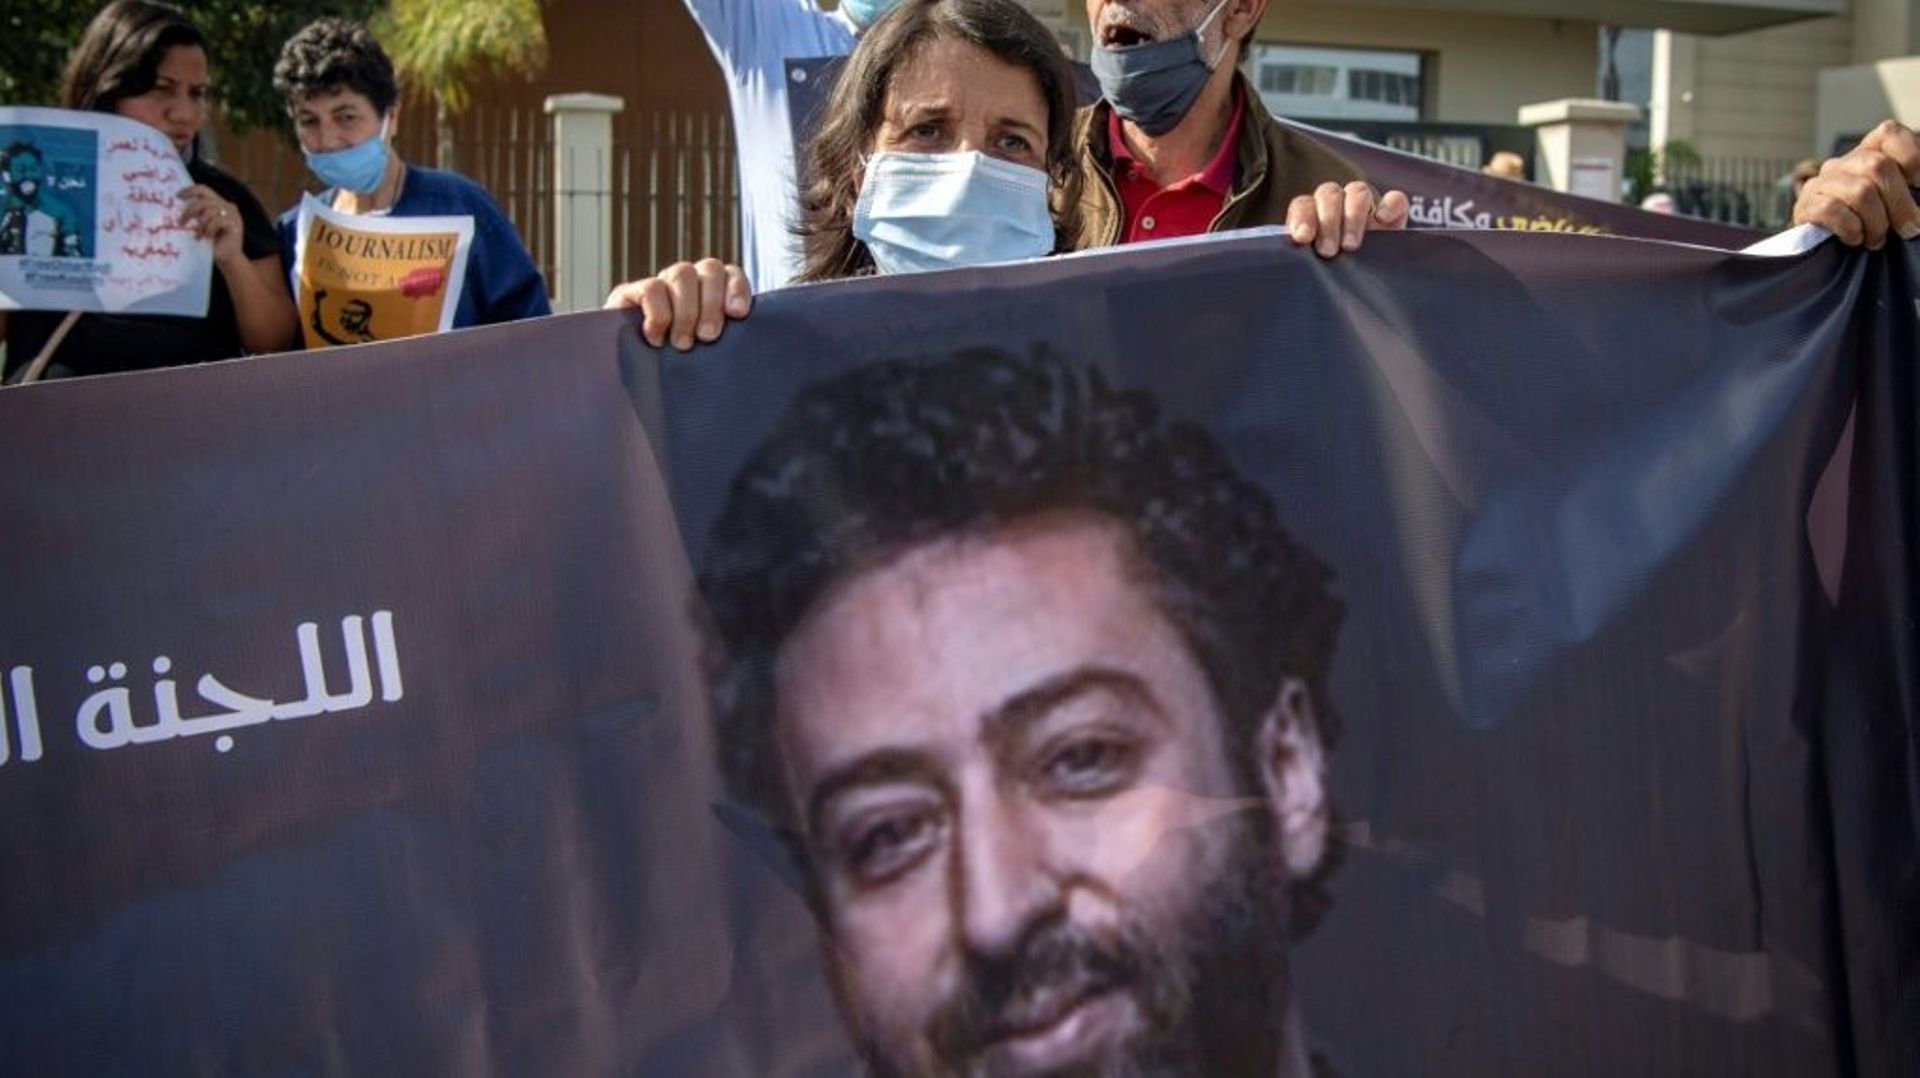 Un portrait du journaliste marocain détenu Omar Radi, lors d'une manifestation de soutien en septembre 2020 à Casablanca